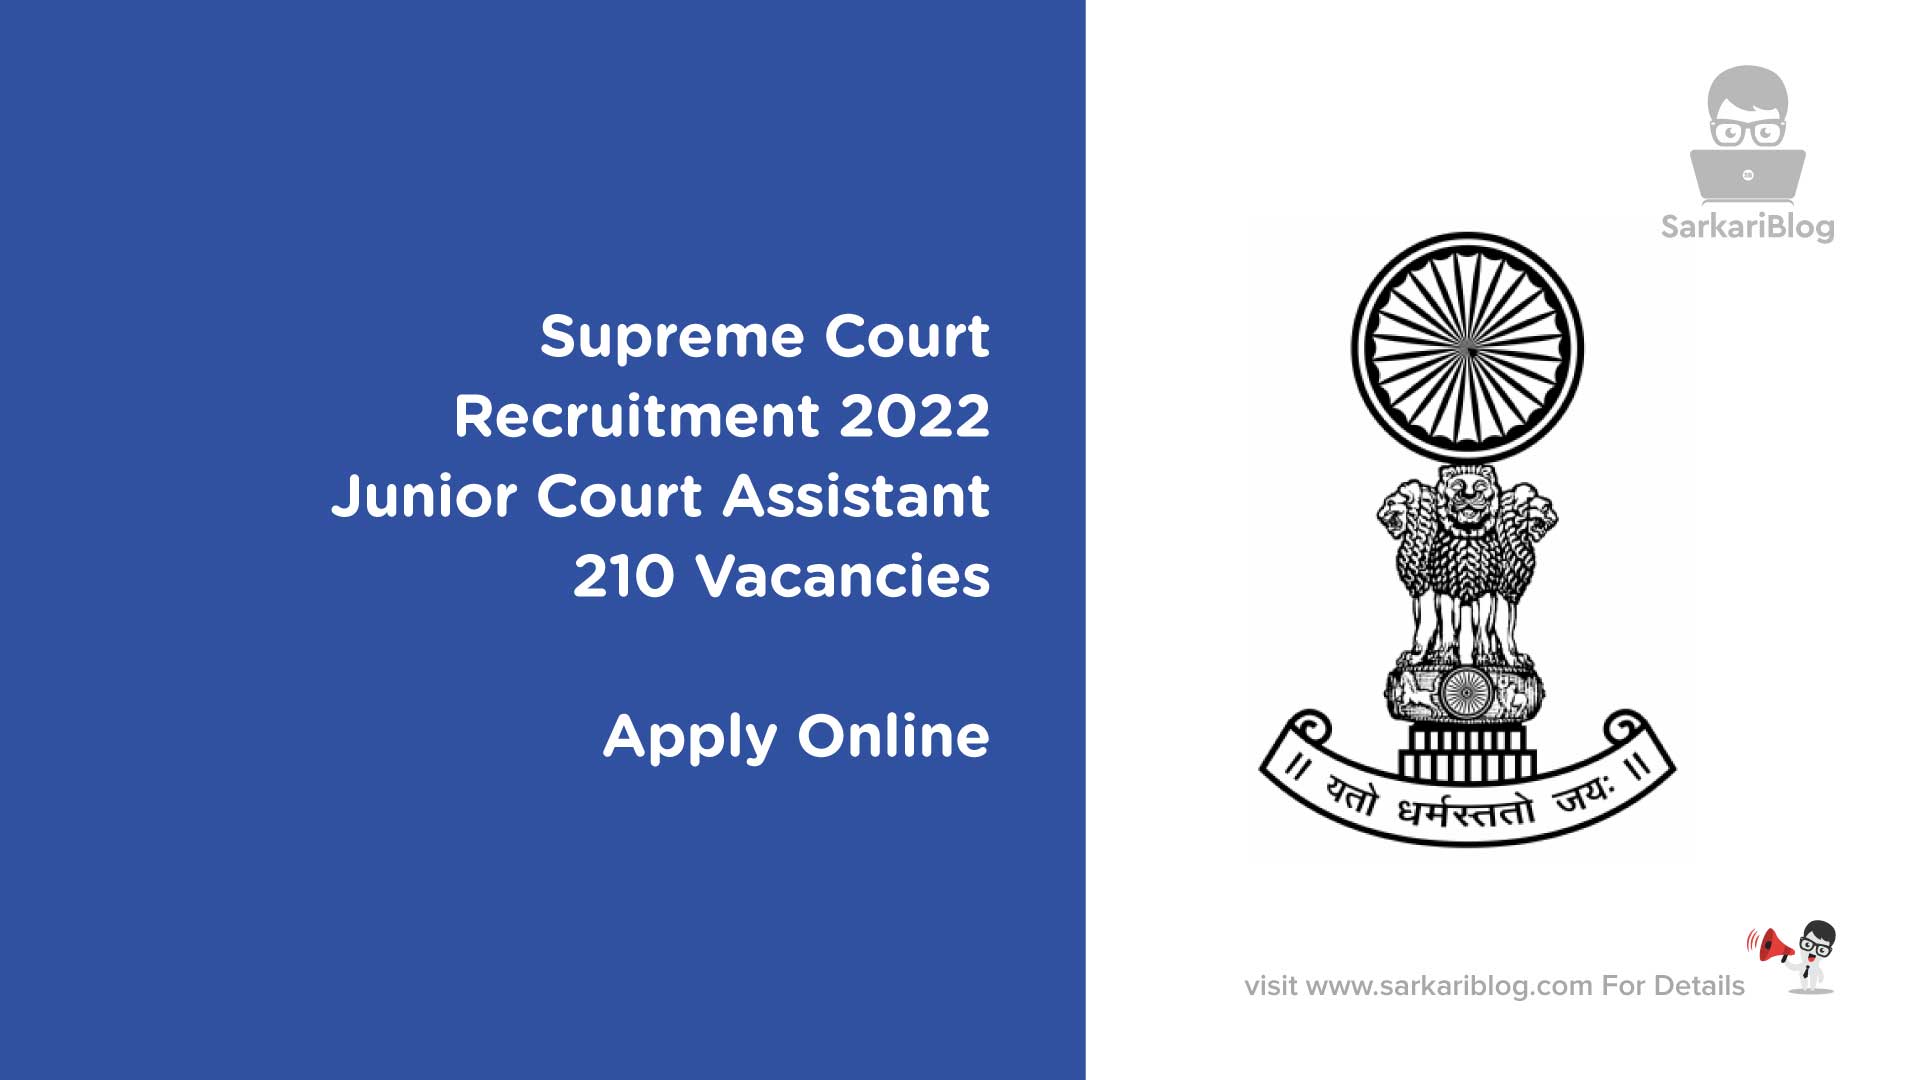 Supreme Court Recruitment 2022